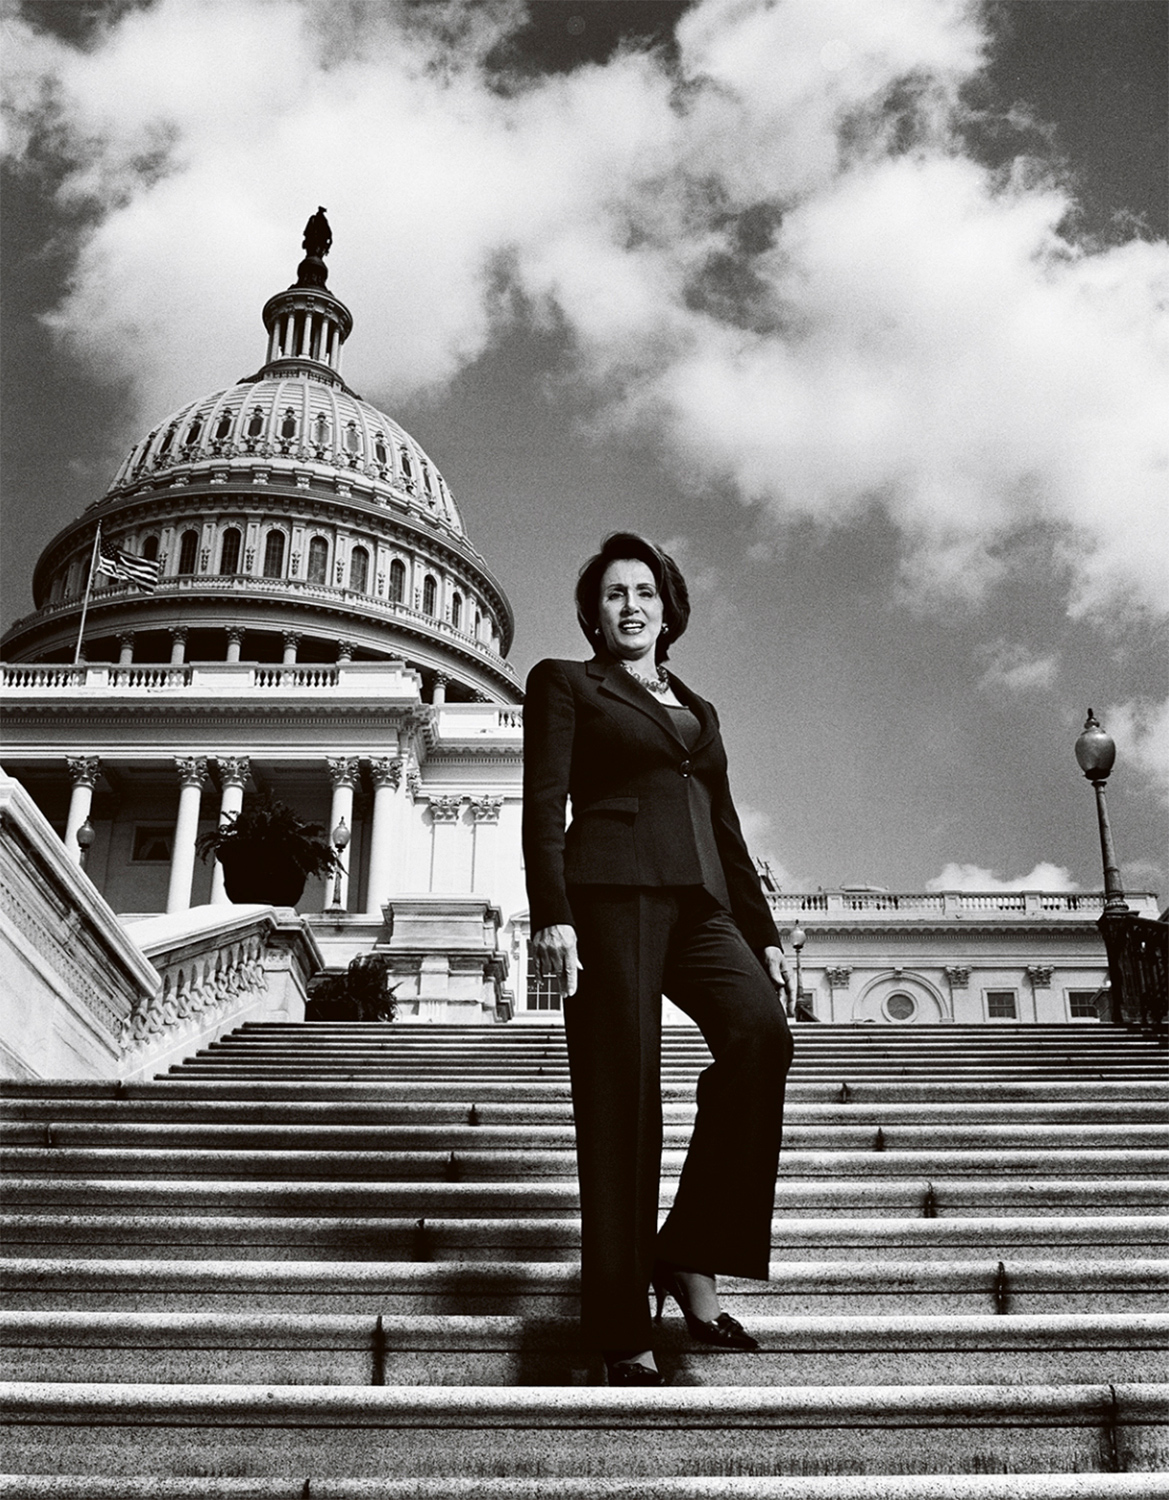   Nancy Pelosi - Washington, D.C.  